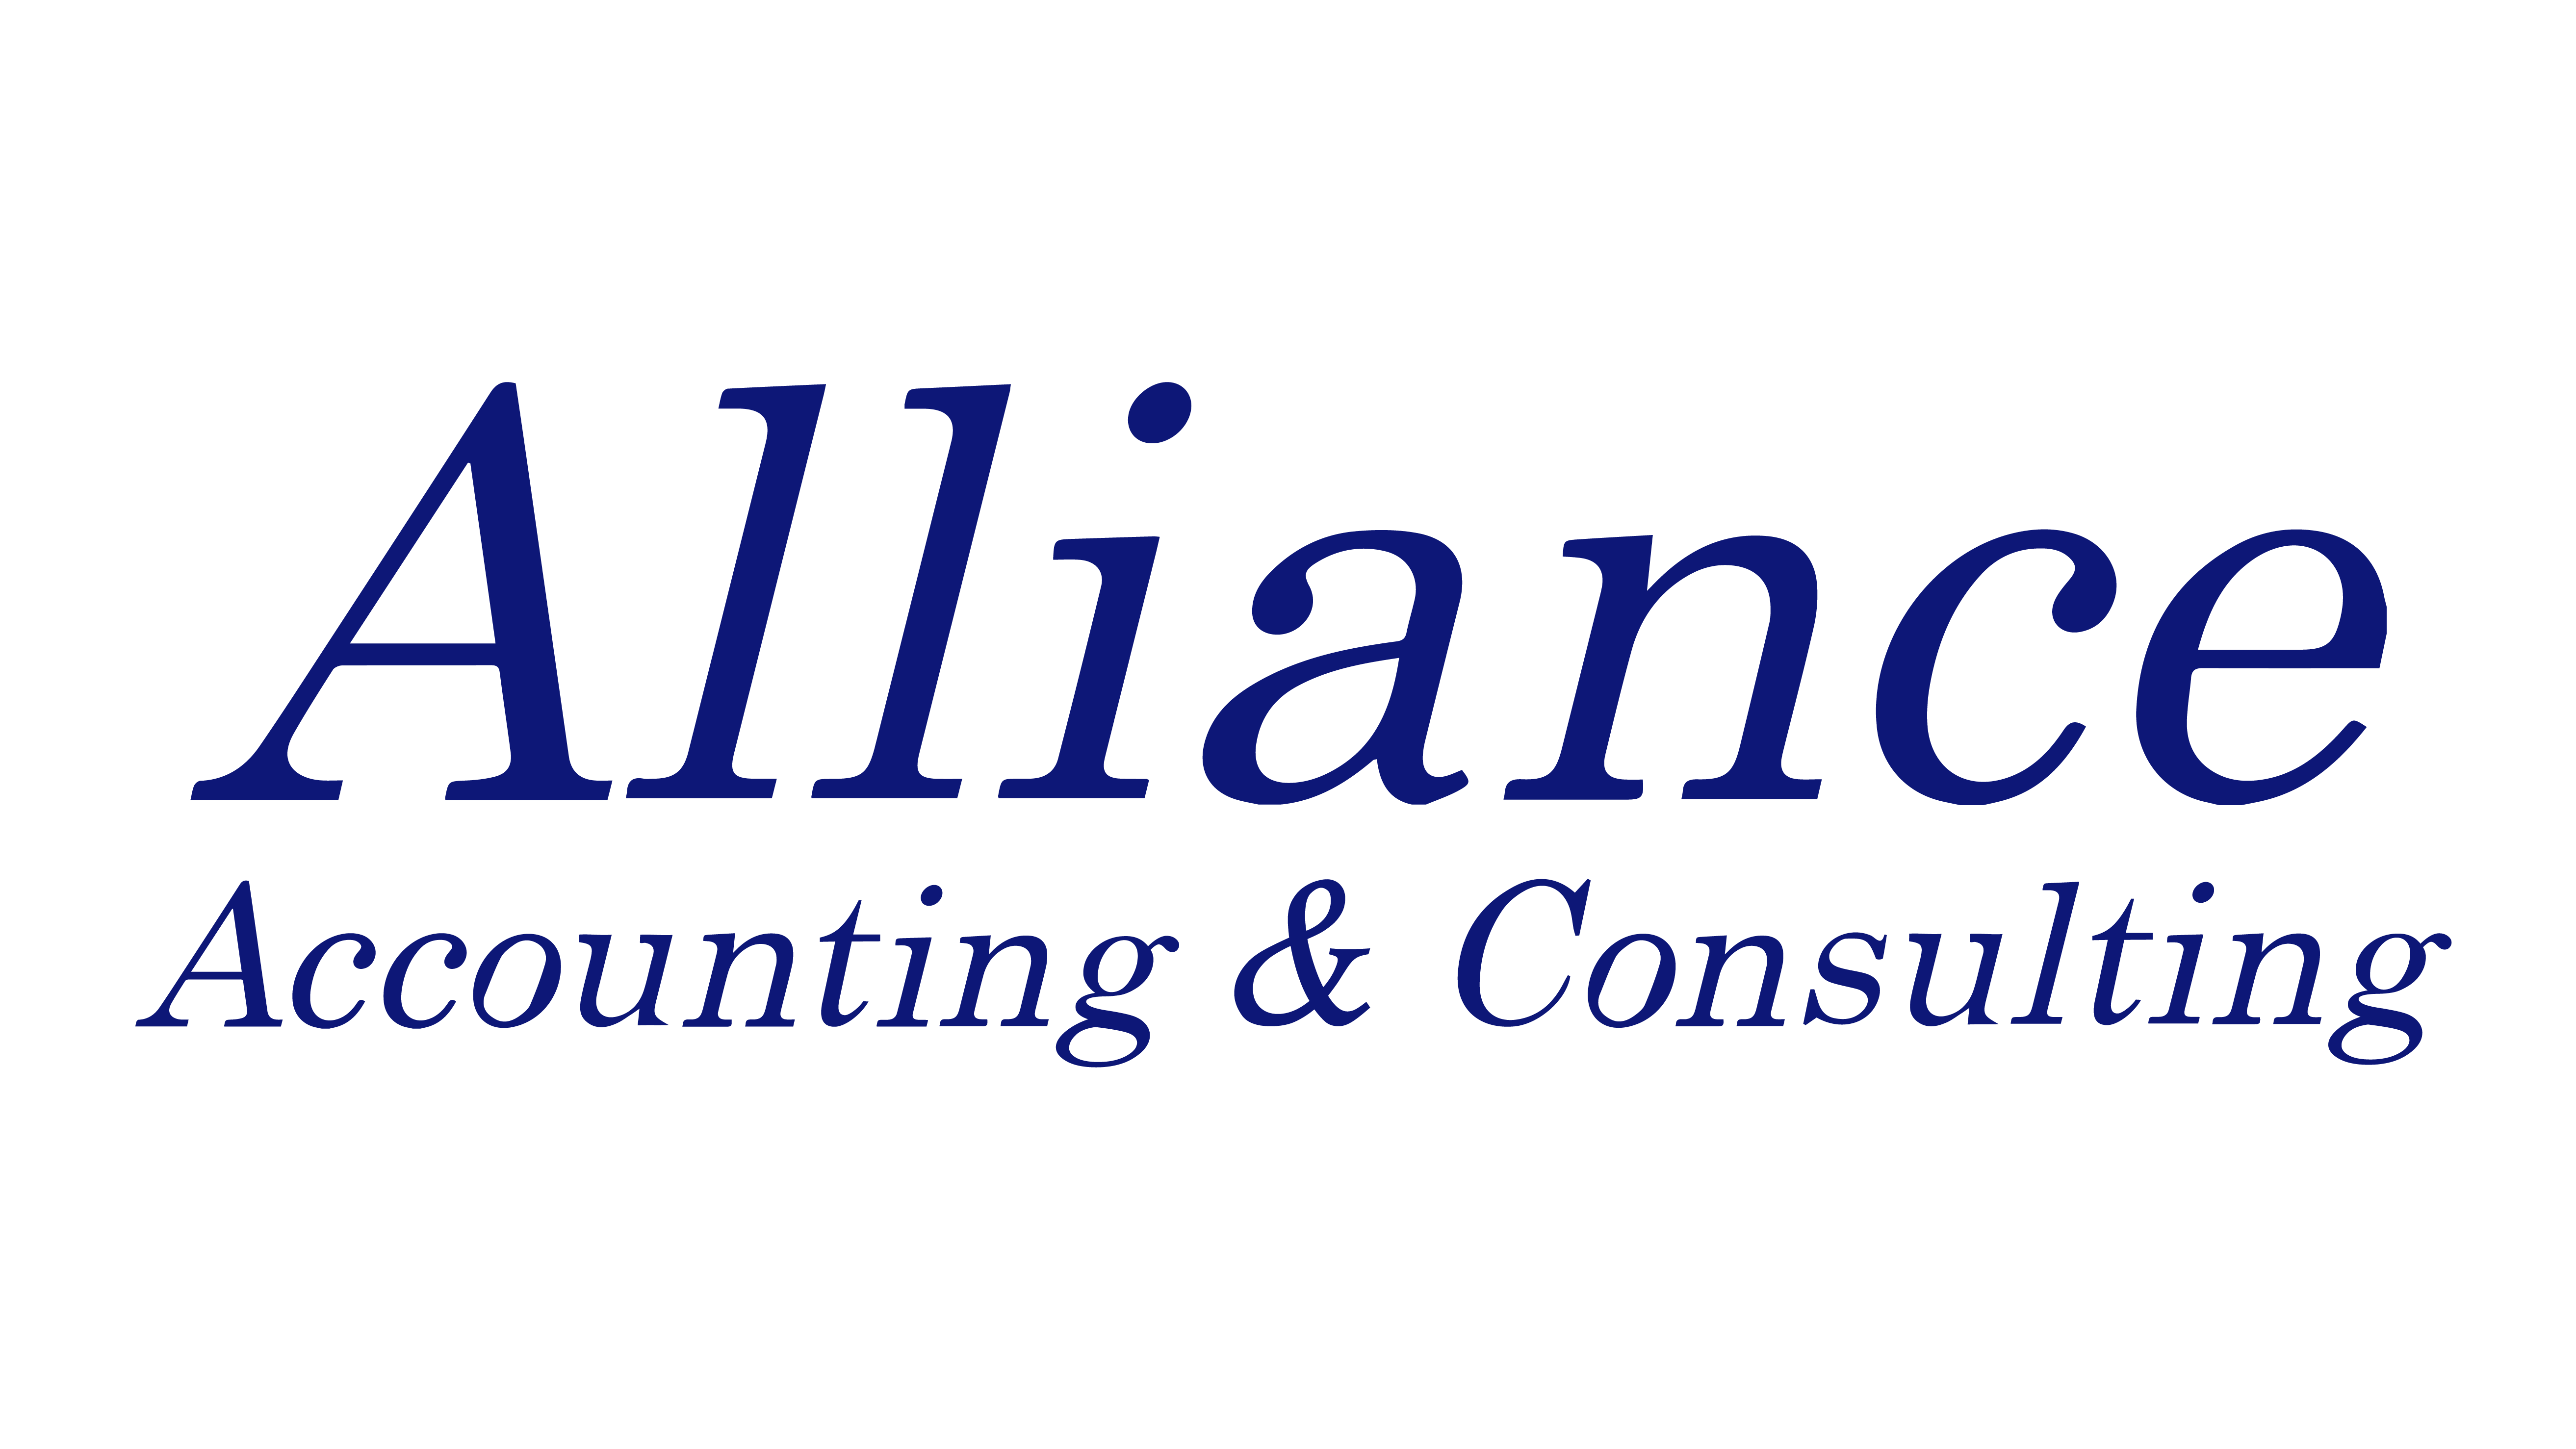 Asia Alliance Partner Co., Ltd.